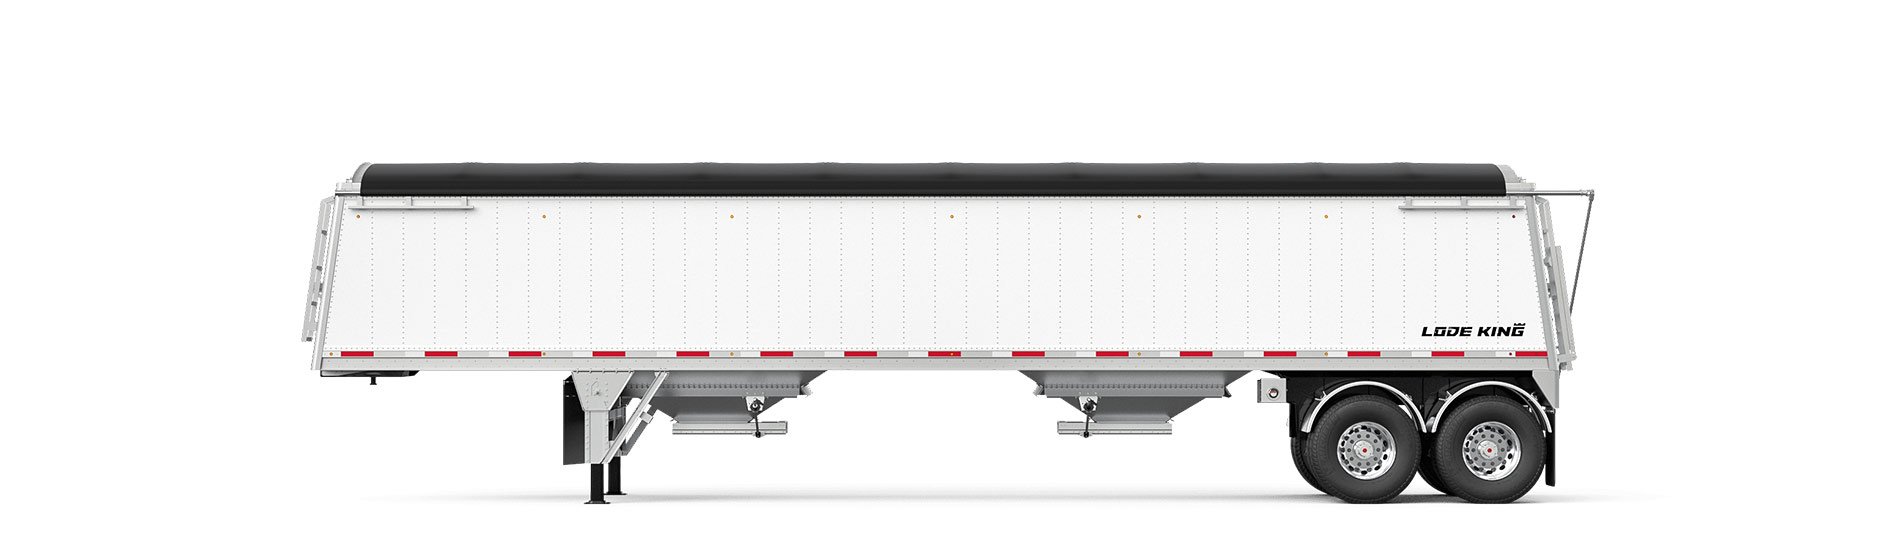 grain hopper trailer